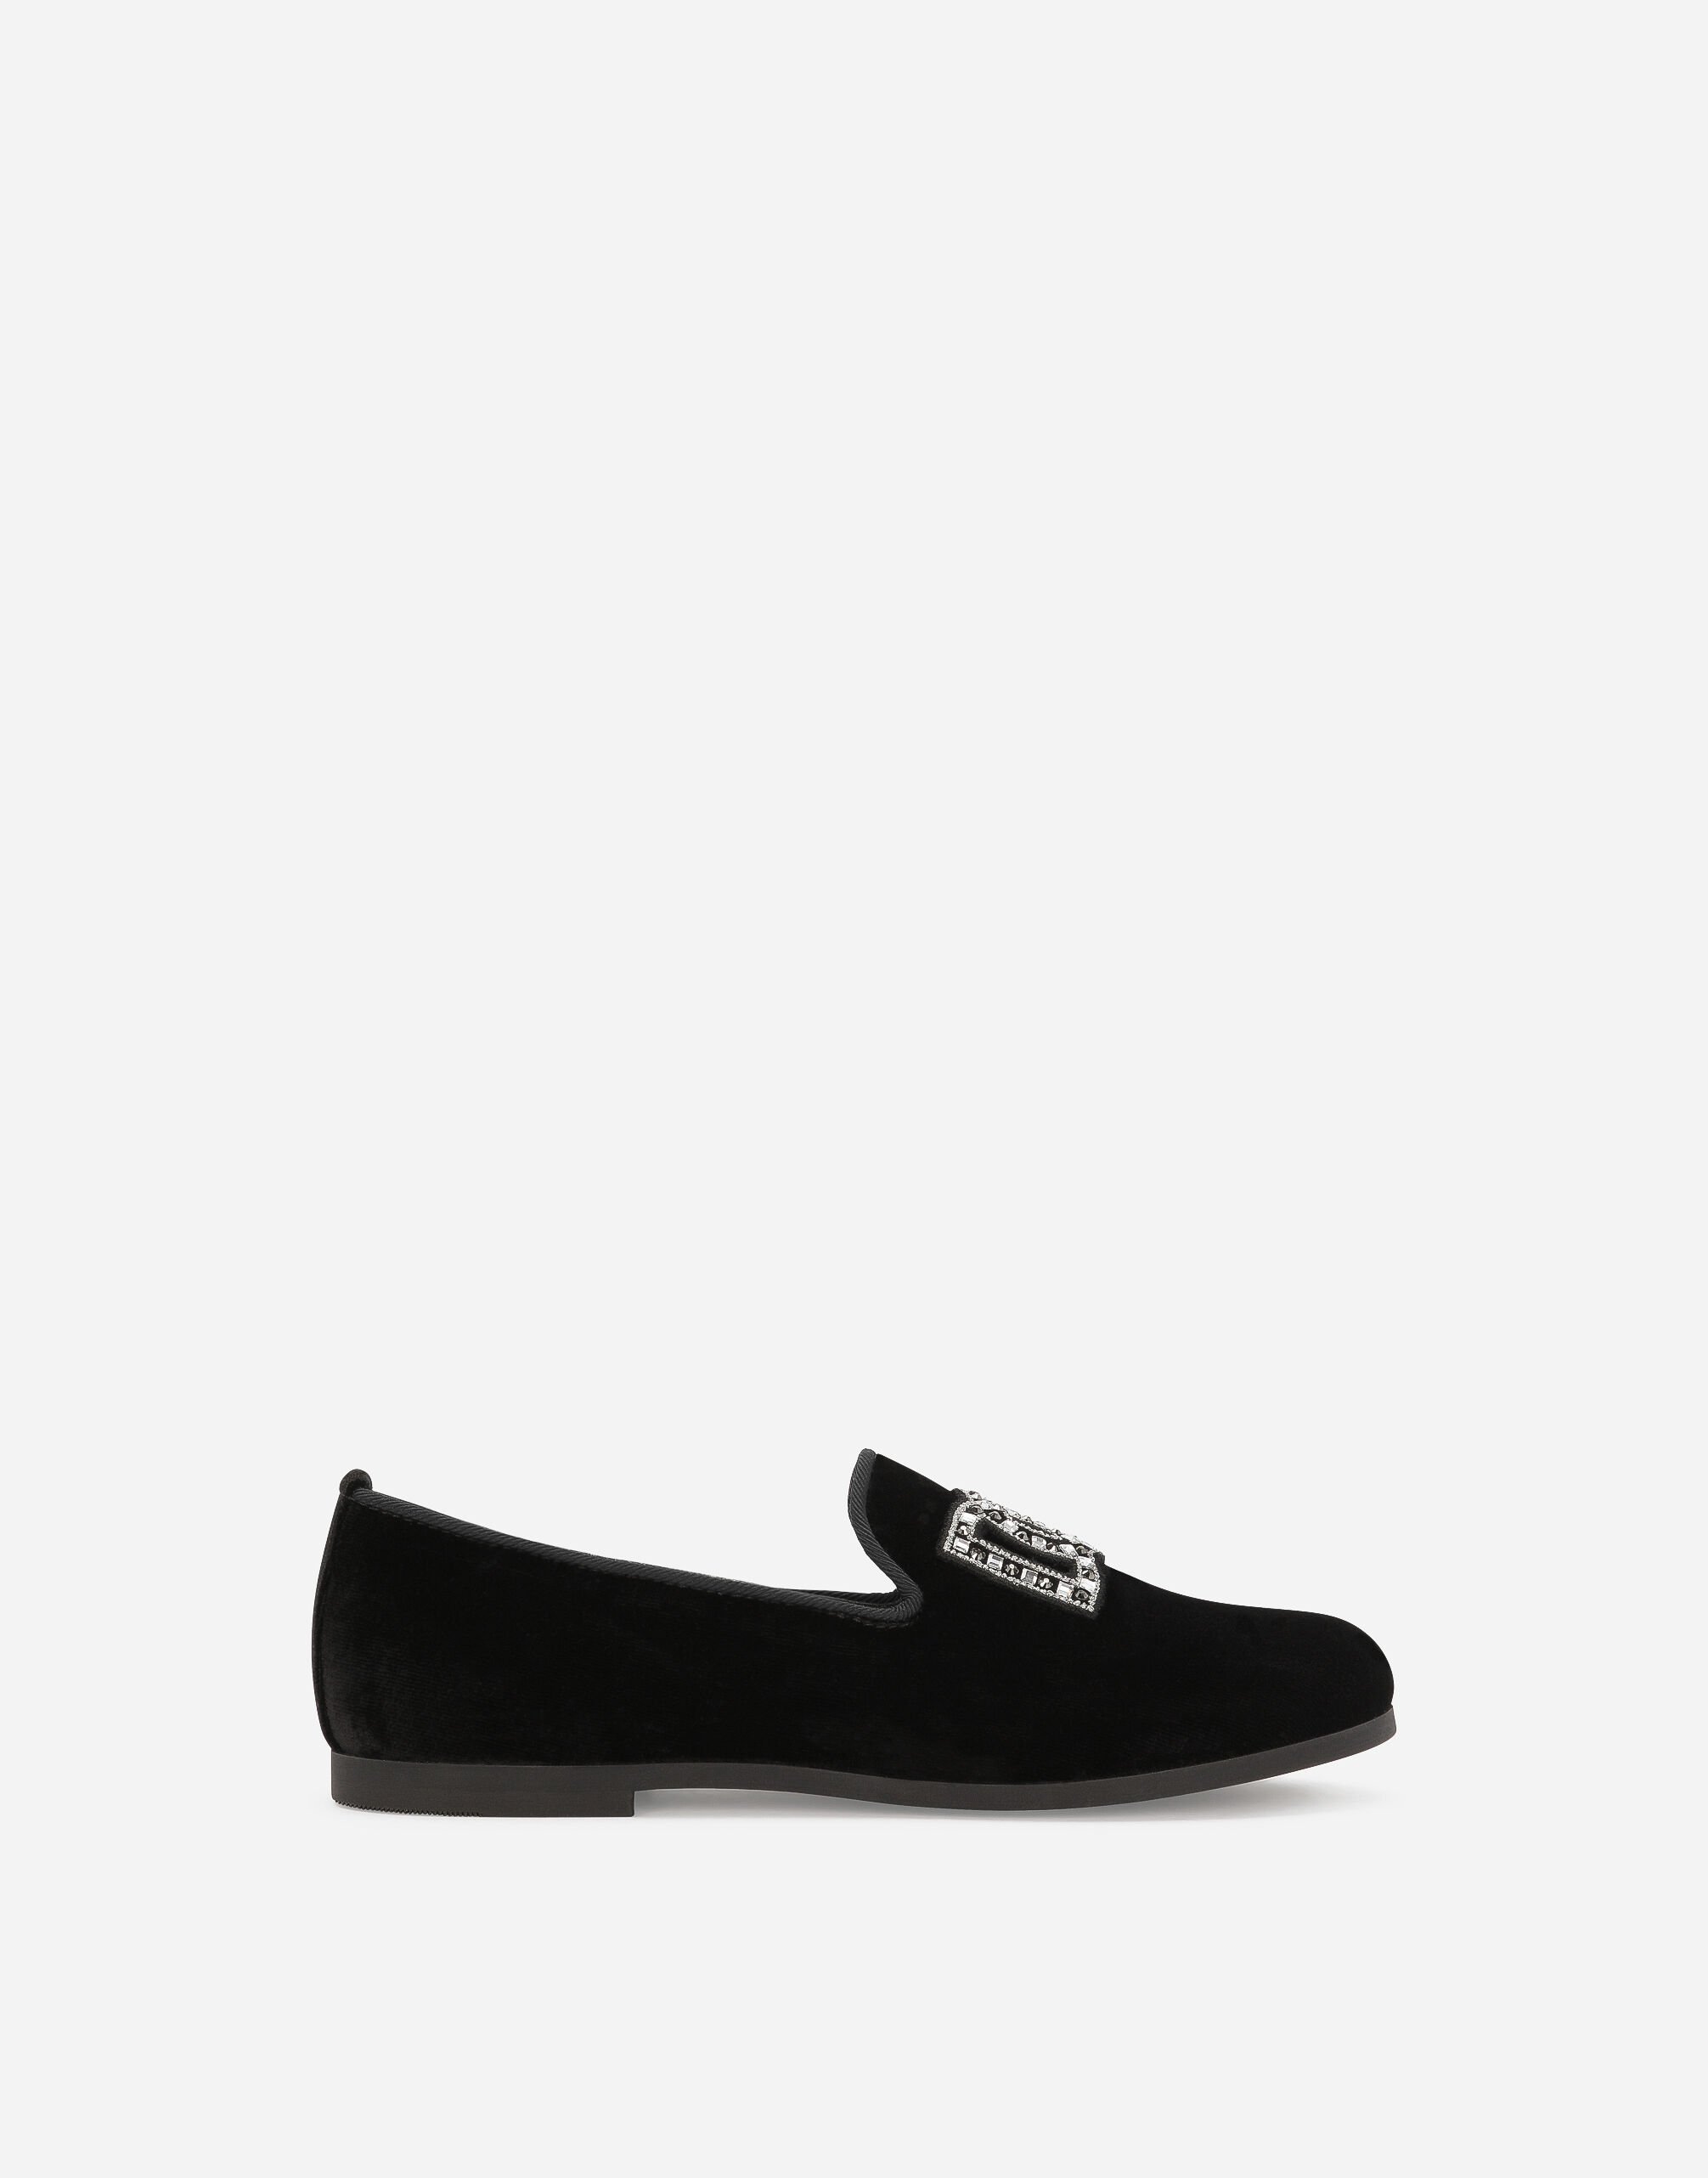 Dolce & Gabbana Velvet slippers Black EB0003AB000